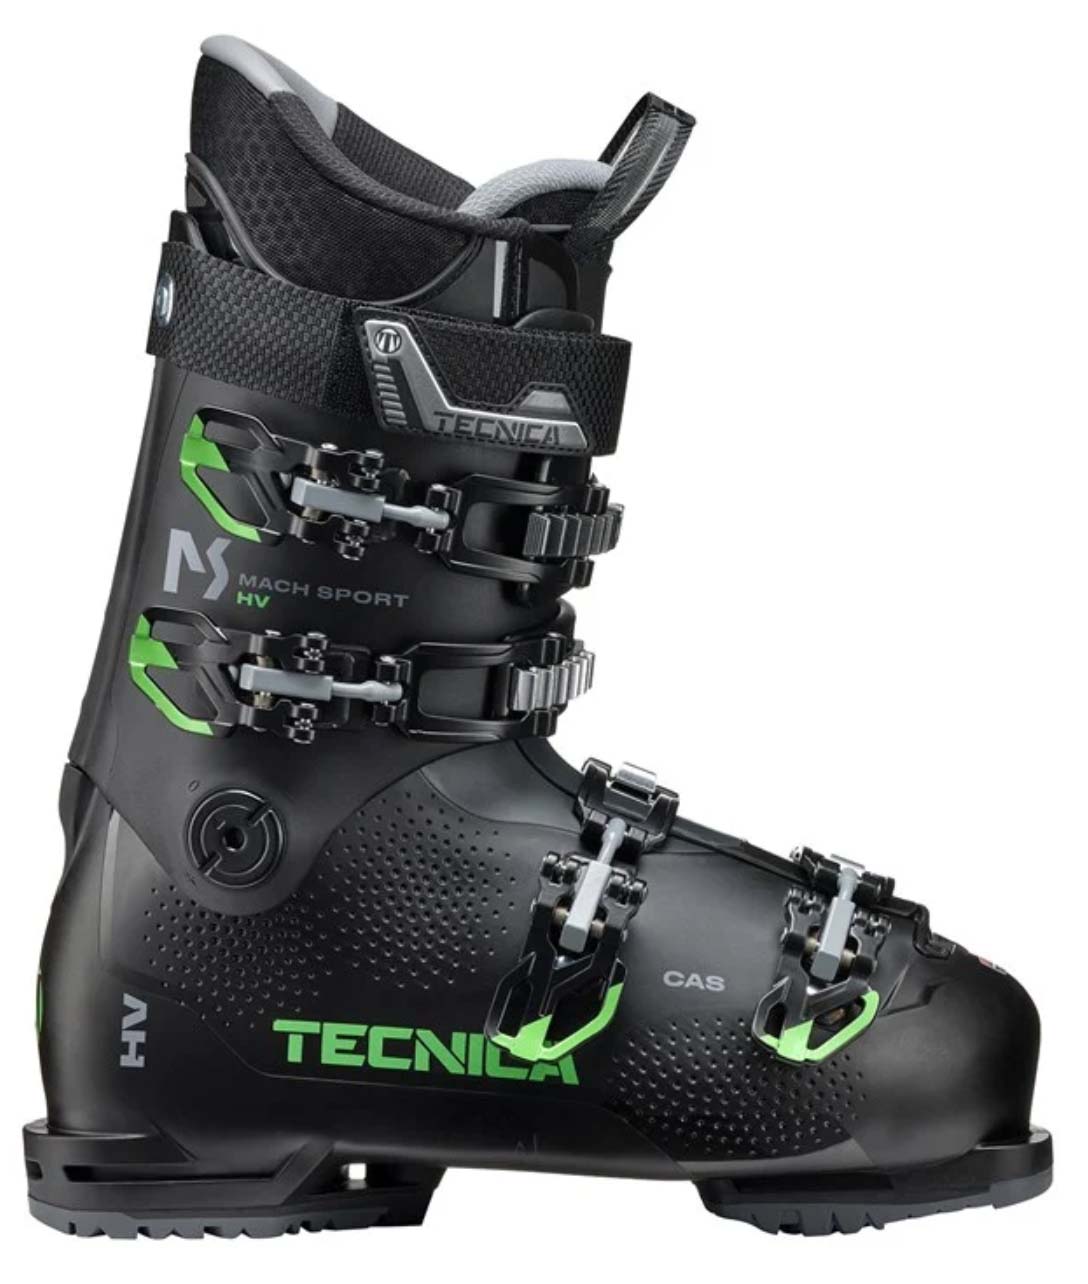 Tecnica Mach Sport HV 80 ski boots